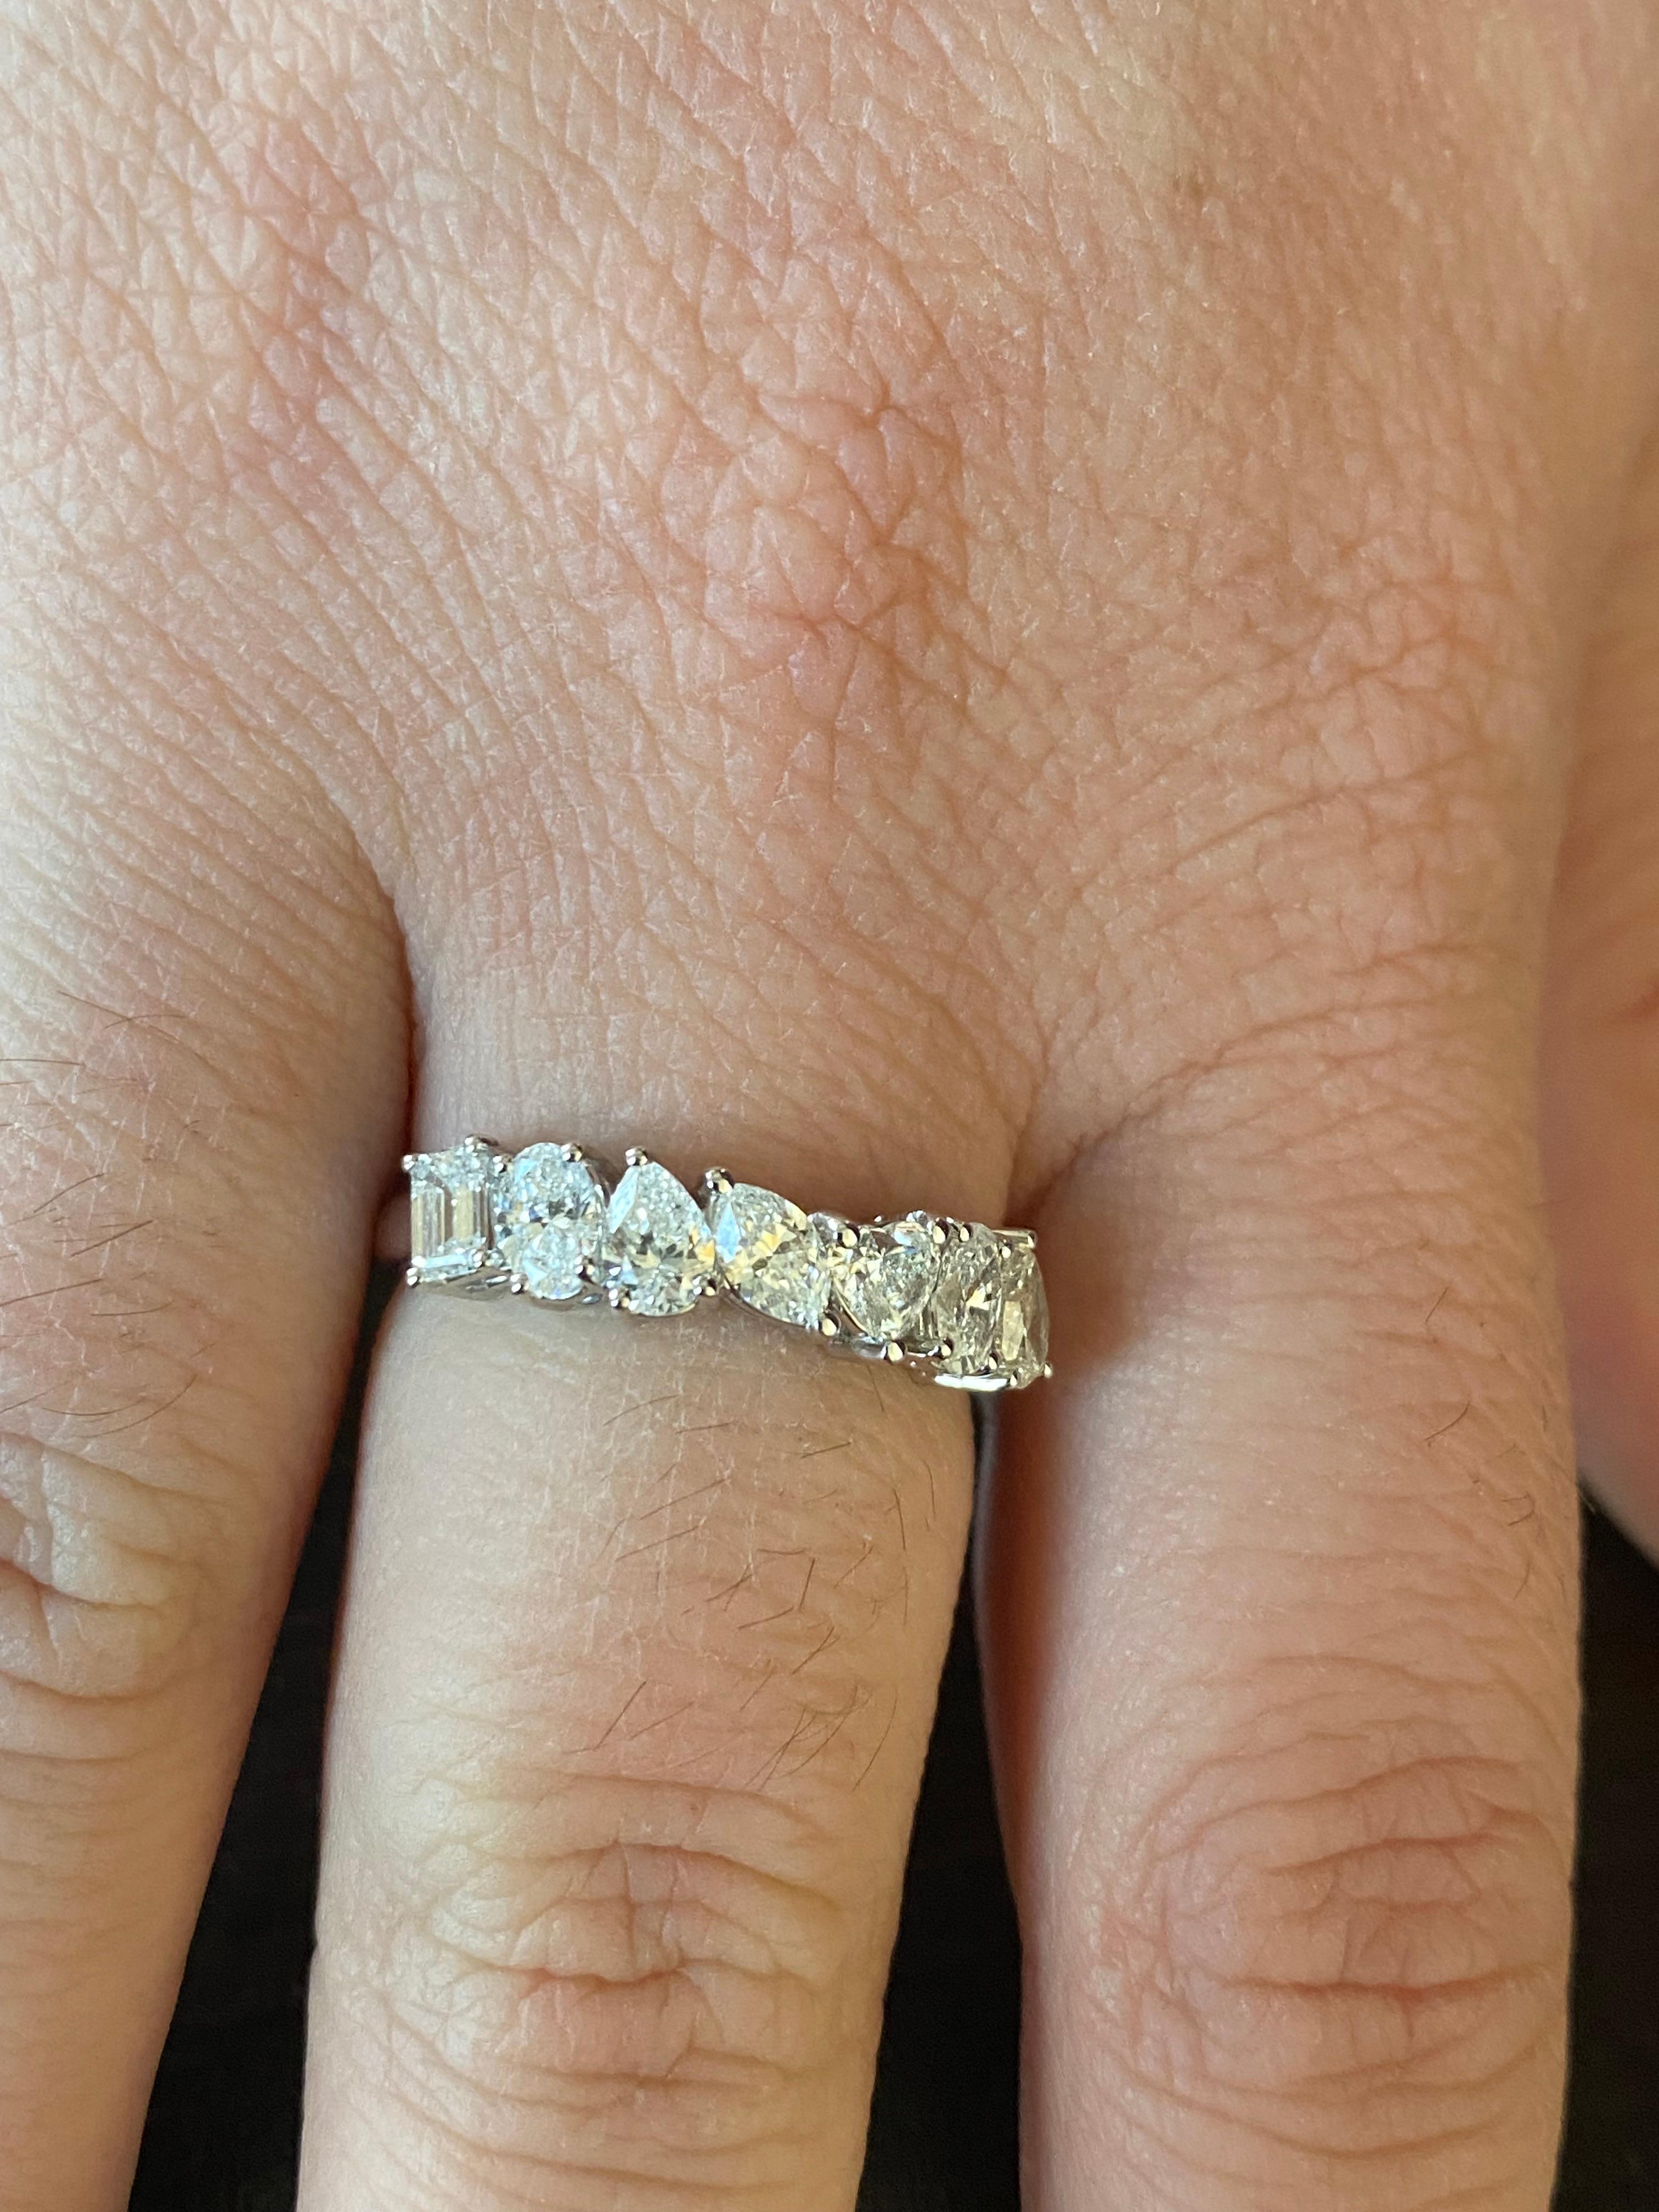 Halbmondförmiger Ring aus 18 Karat Weißgold. Der Ring ist mit smaragd-, oval-, birnen-, marquise- und herzförmigen Diamanten besetzt. Die Farbe der Steine ist F-G, die Reinheit ist VS1-VS2. Das Gewicht beträgt 1,35 Karat. Der Ring ist eine Größe 6,5